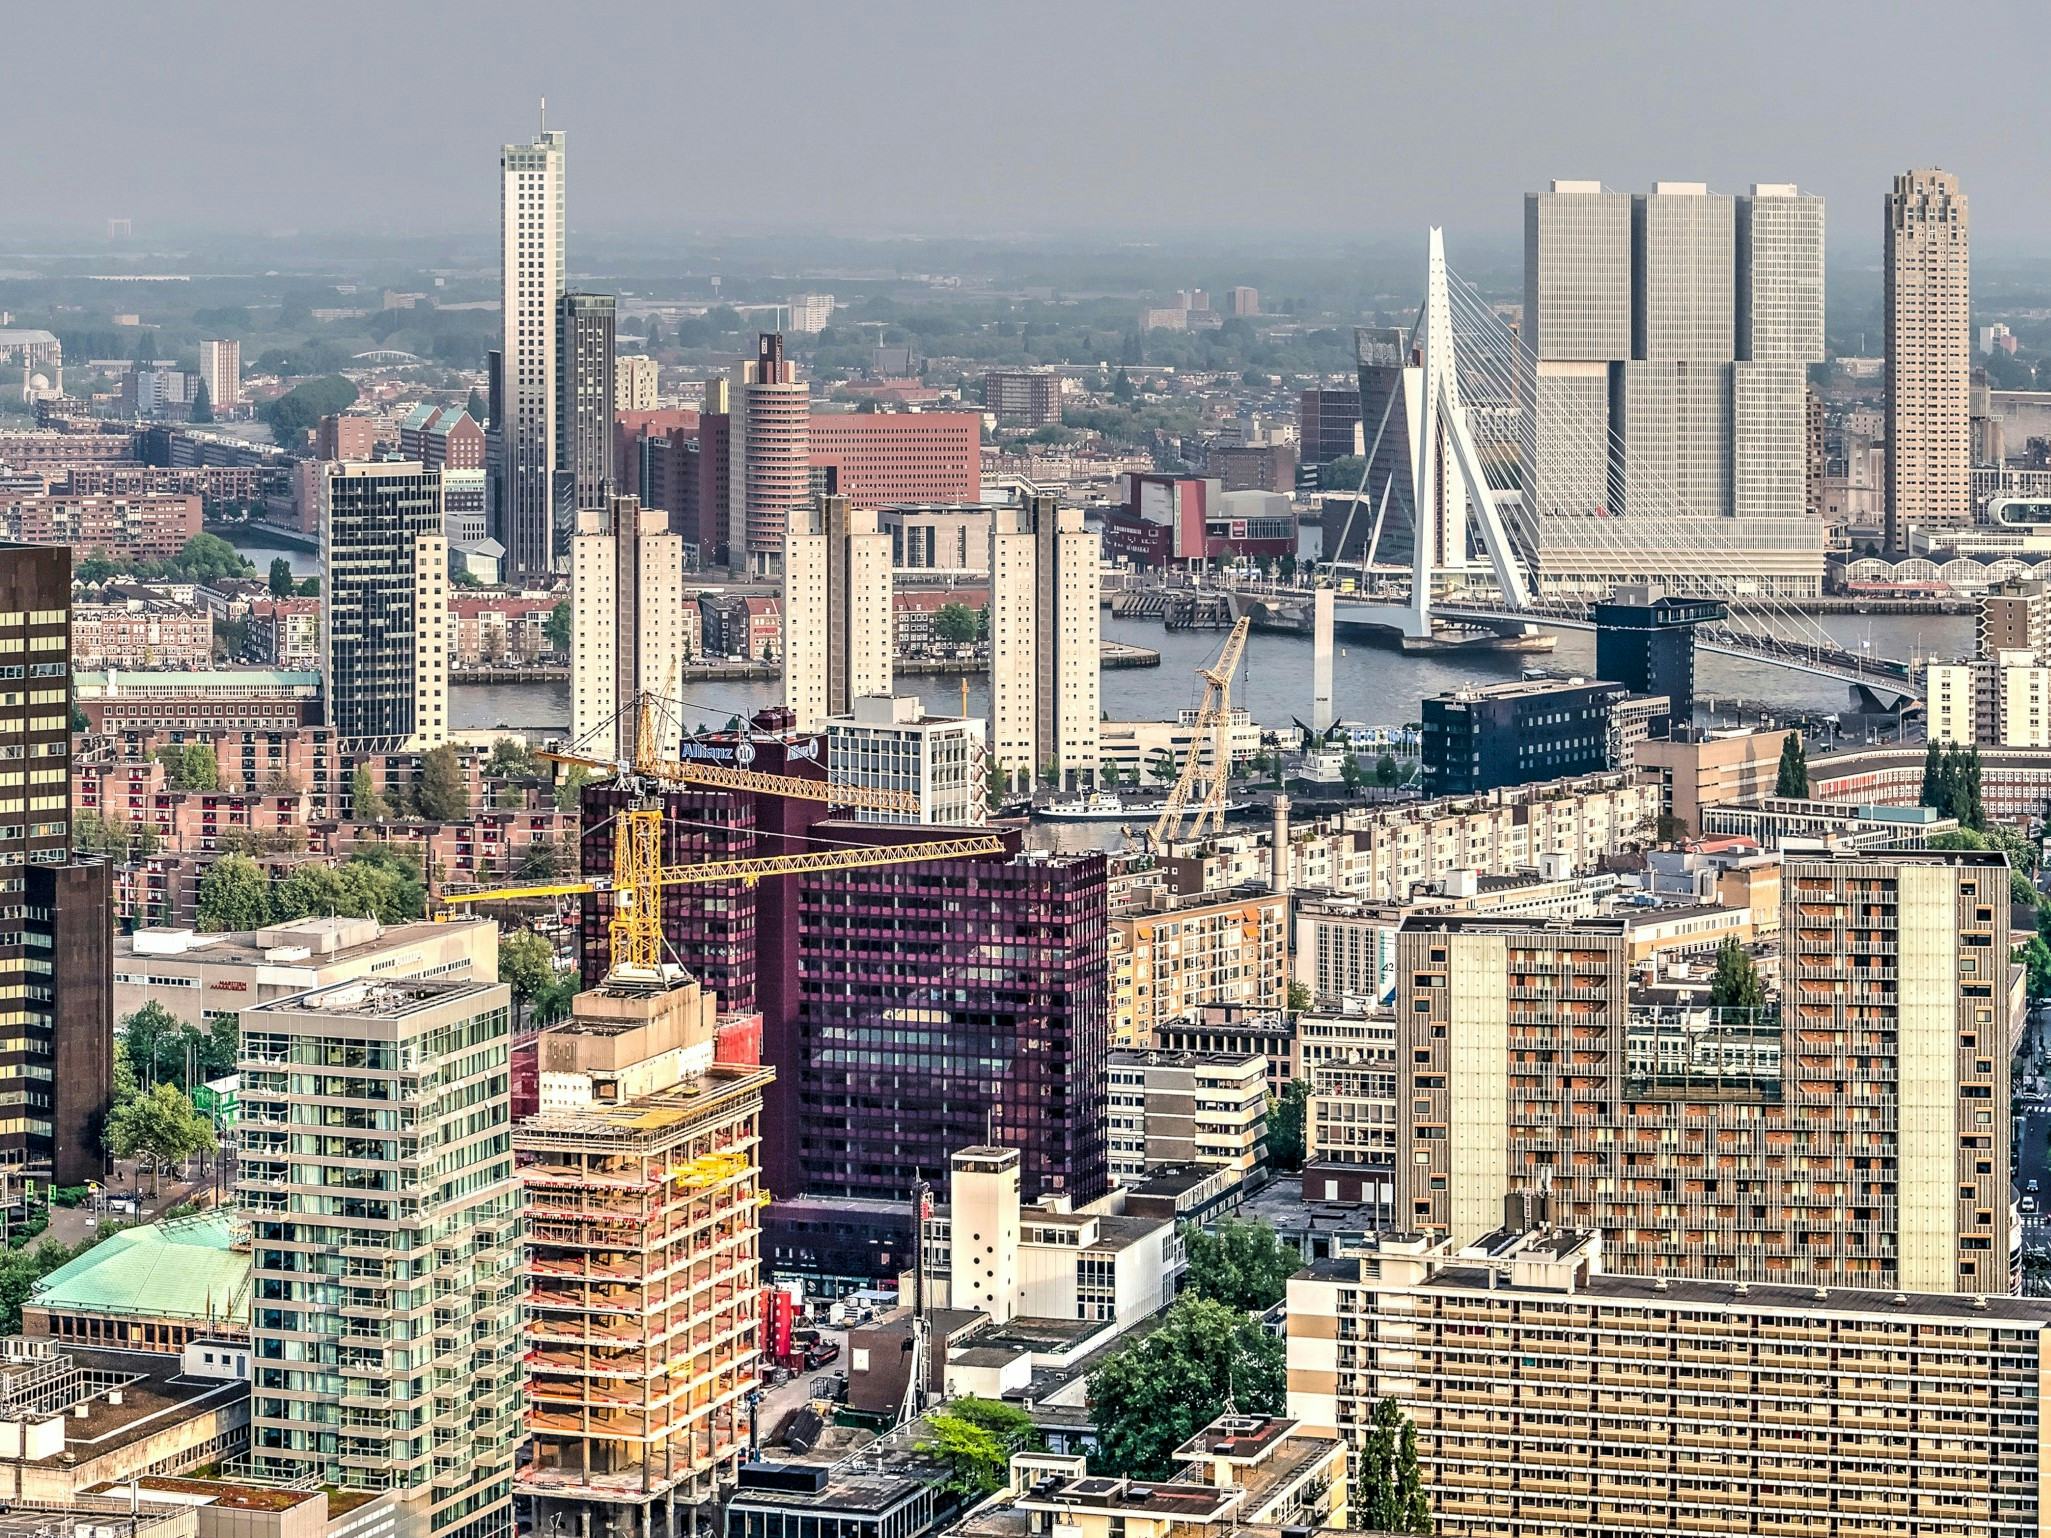 Hoogbouw in Rotterdam. Beeld Shutterstock